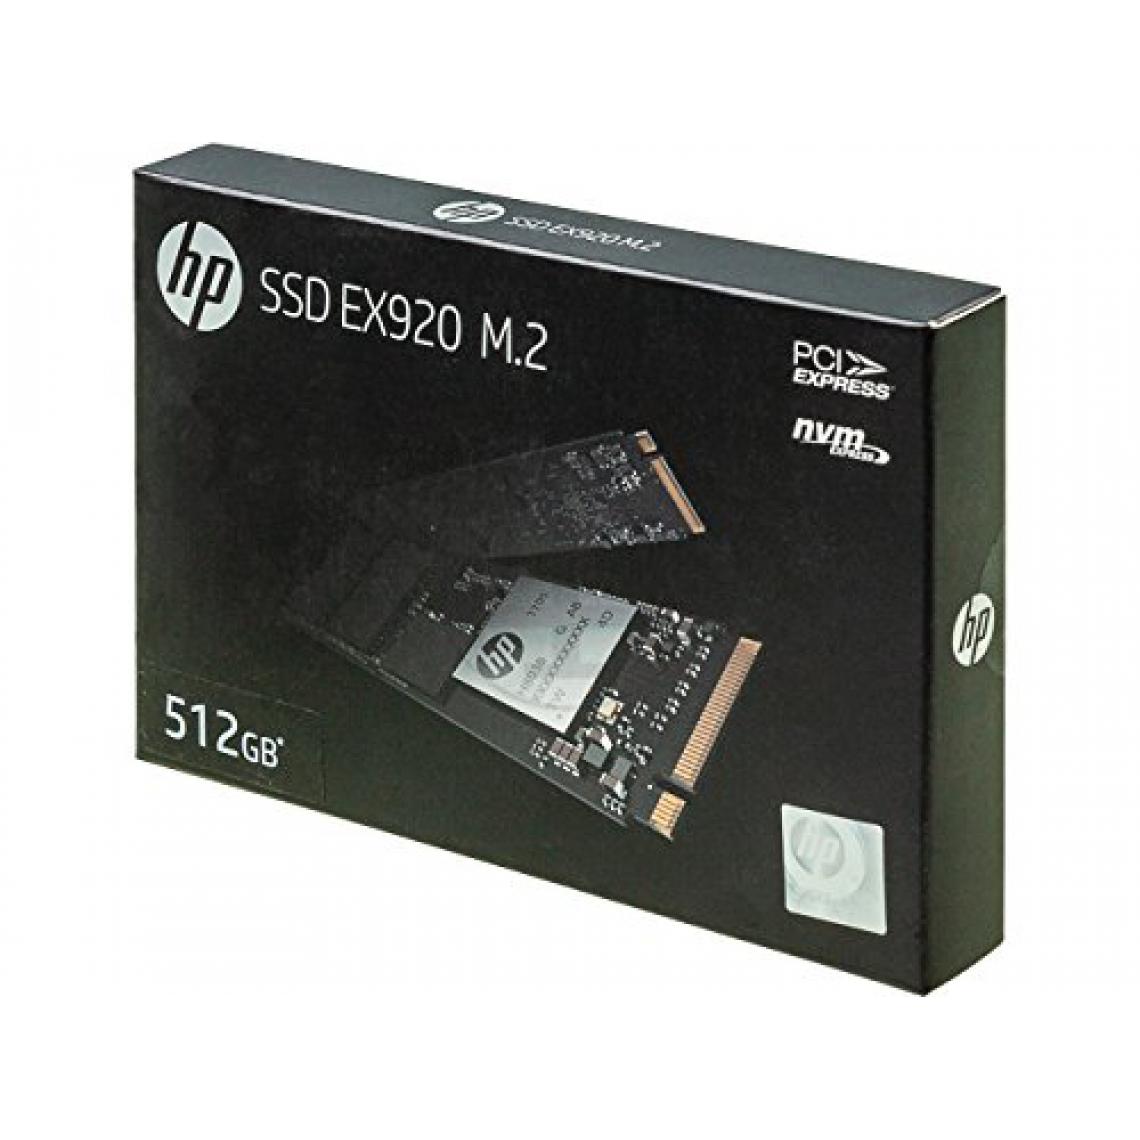 Hp - HP SSD EX920 512GB, M.2 PCIe Gen3 x4 NVMe, 3200/1600 MB/s, 3D NAND - Disque Dur interne